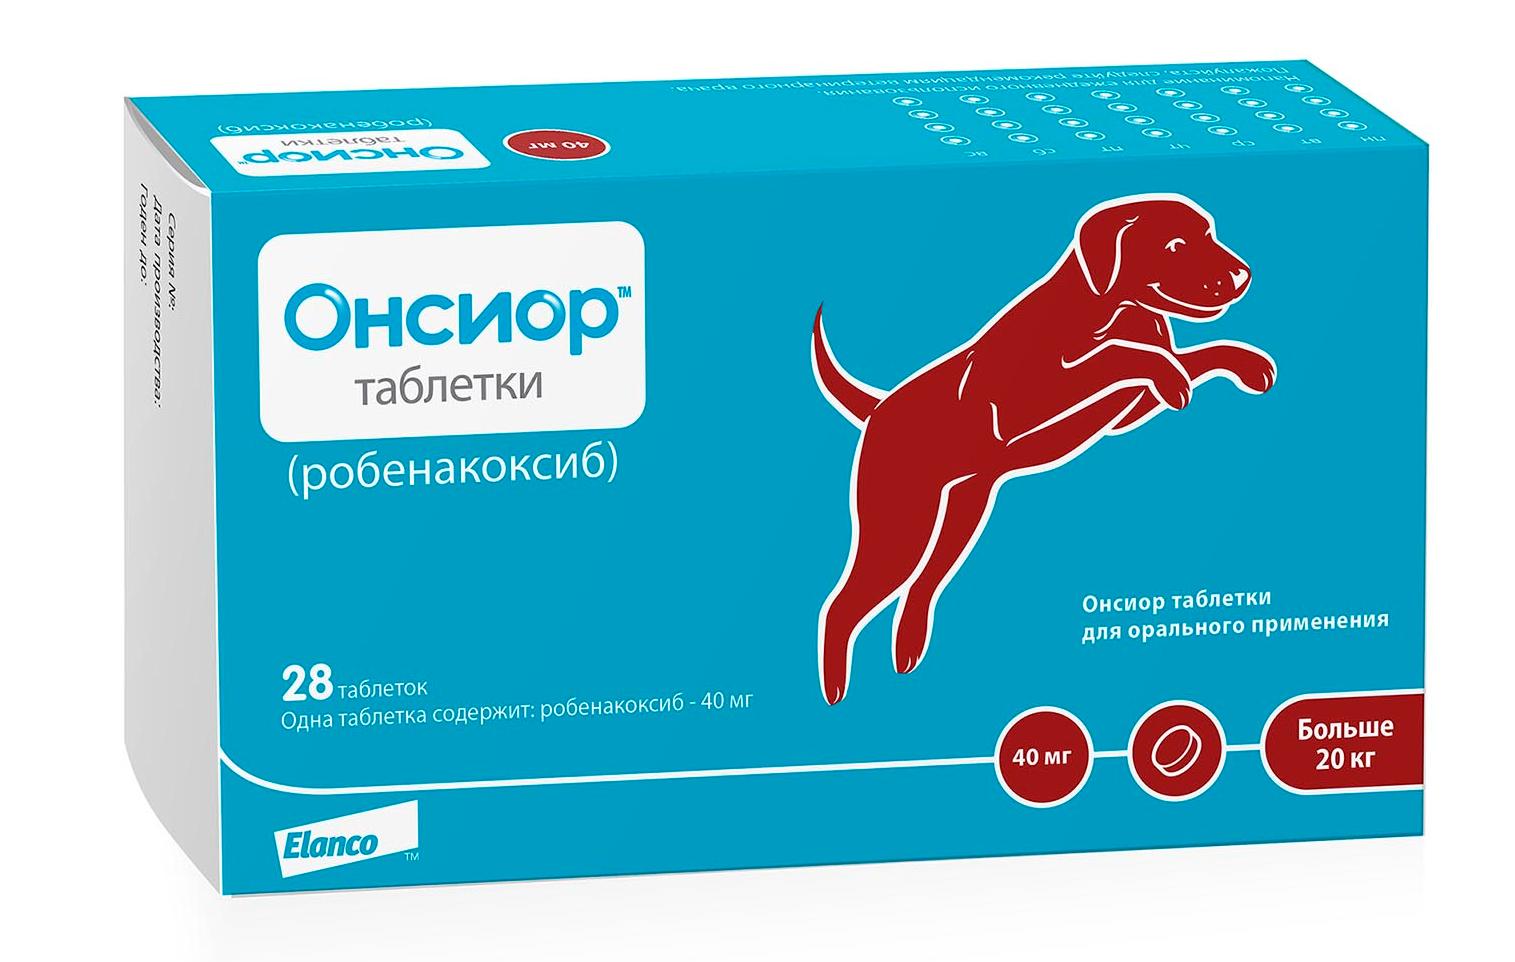 Elanco Онсиор таблетки для собак более 20 кг